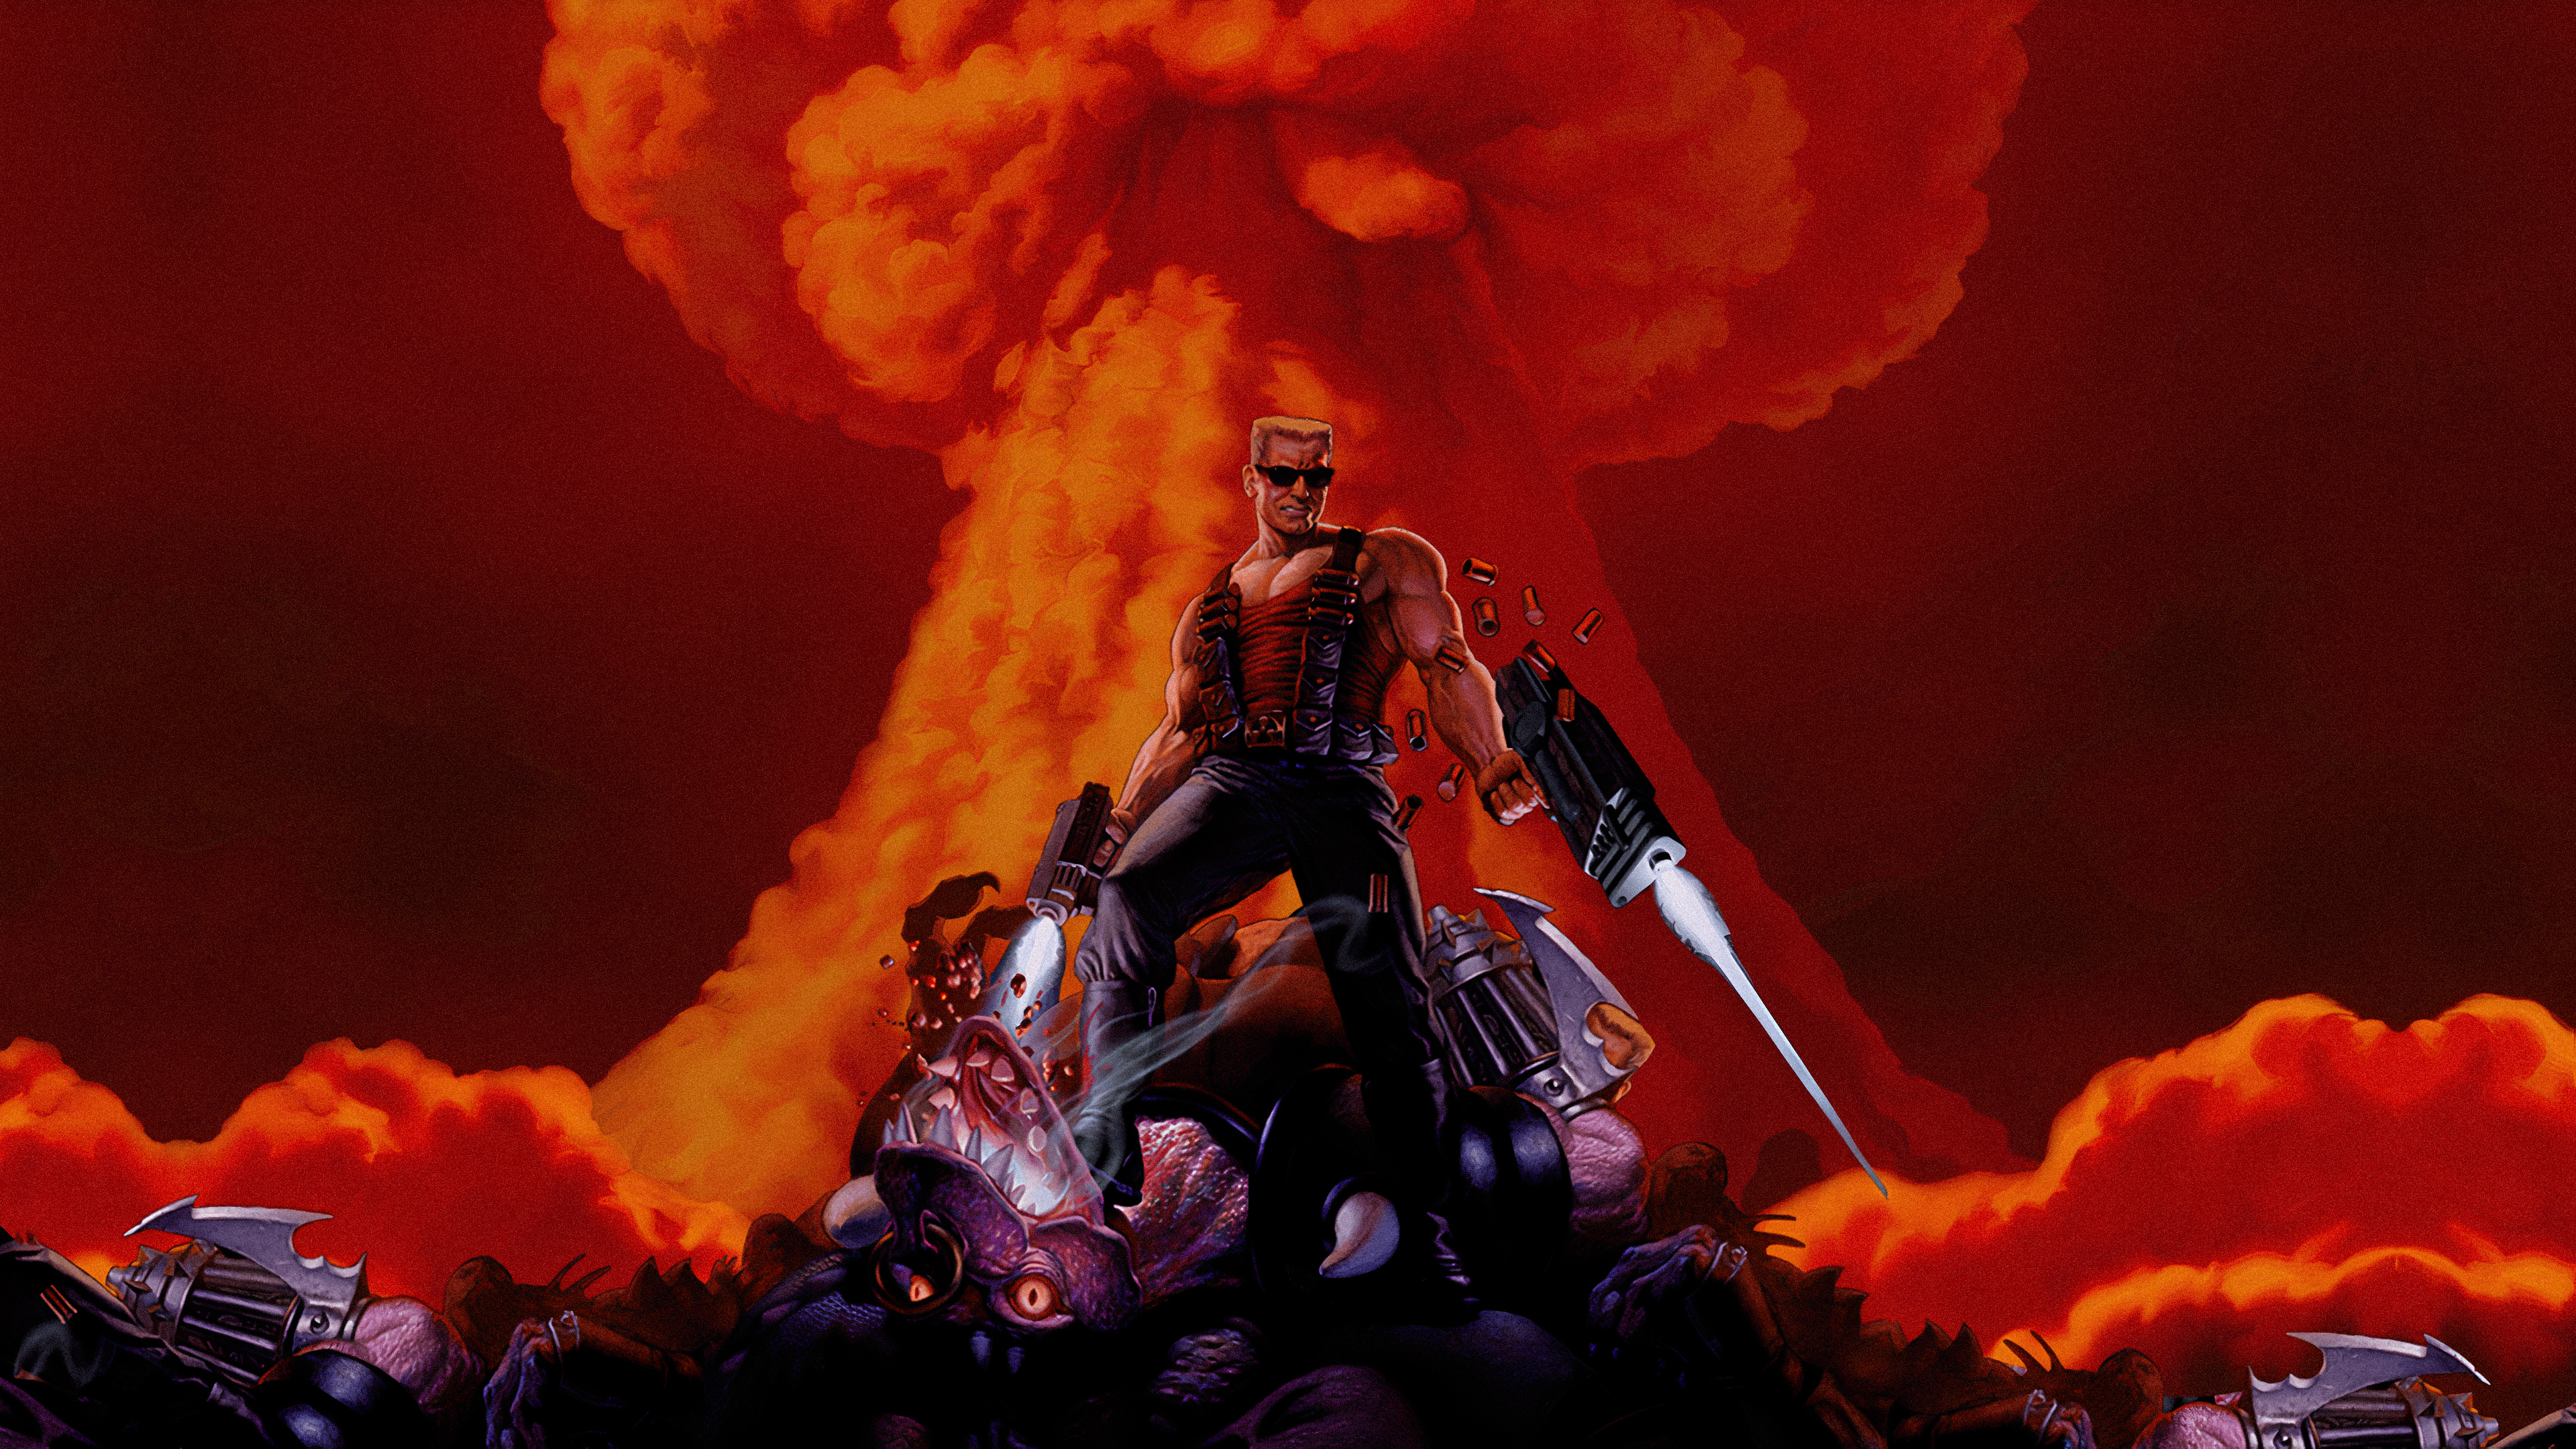 Video Game Duke Nukem 3D HD Wallpaper | Background Image